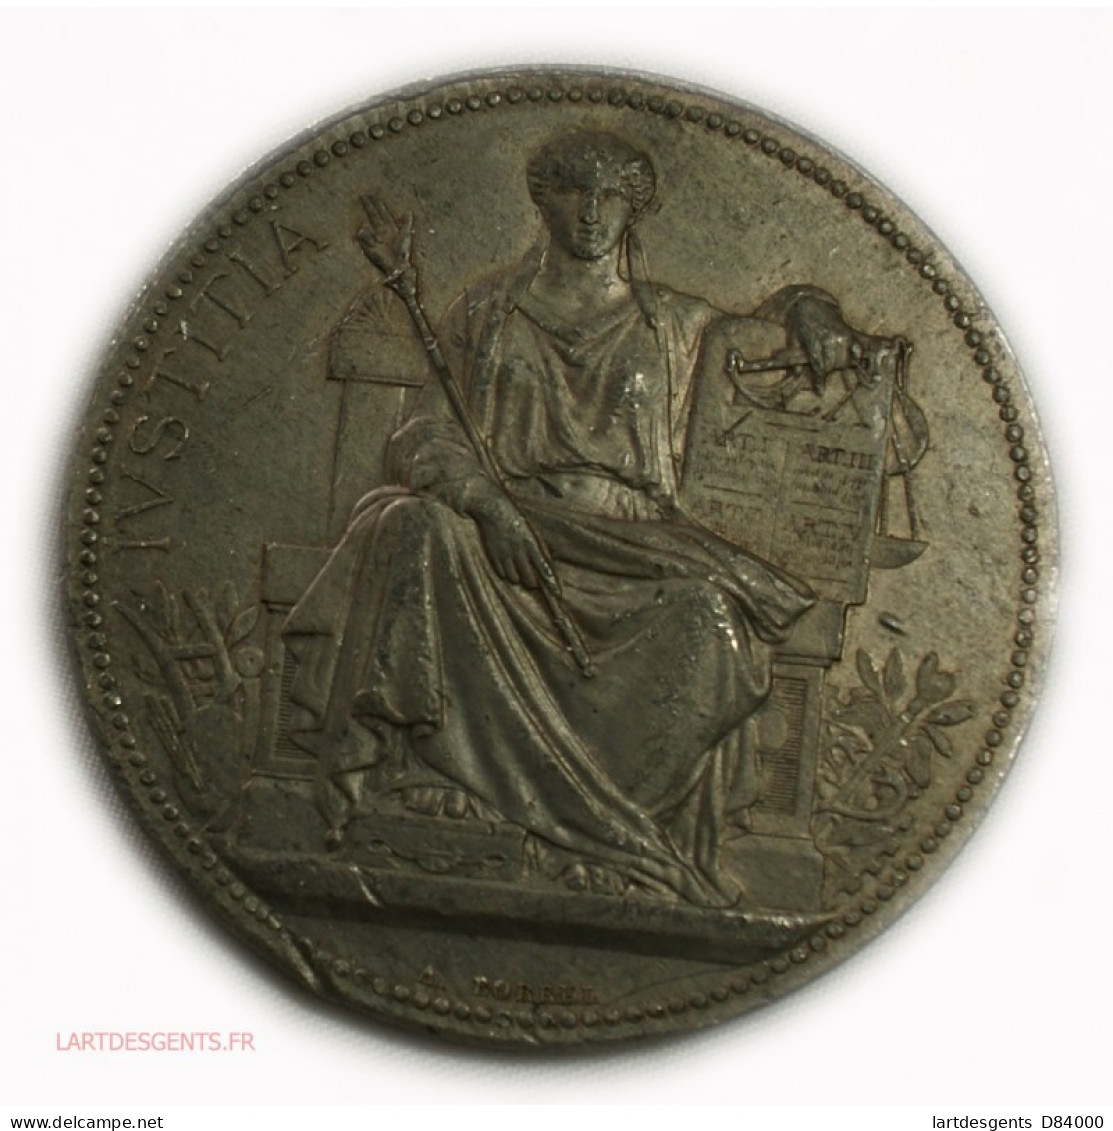 Rare Médaille Justice étain - Béziers 1892, Lartdesgents - Royaux / De Noblesse